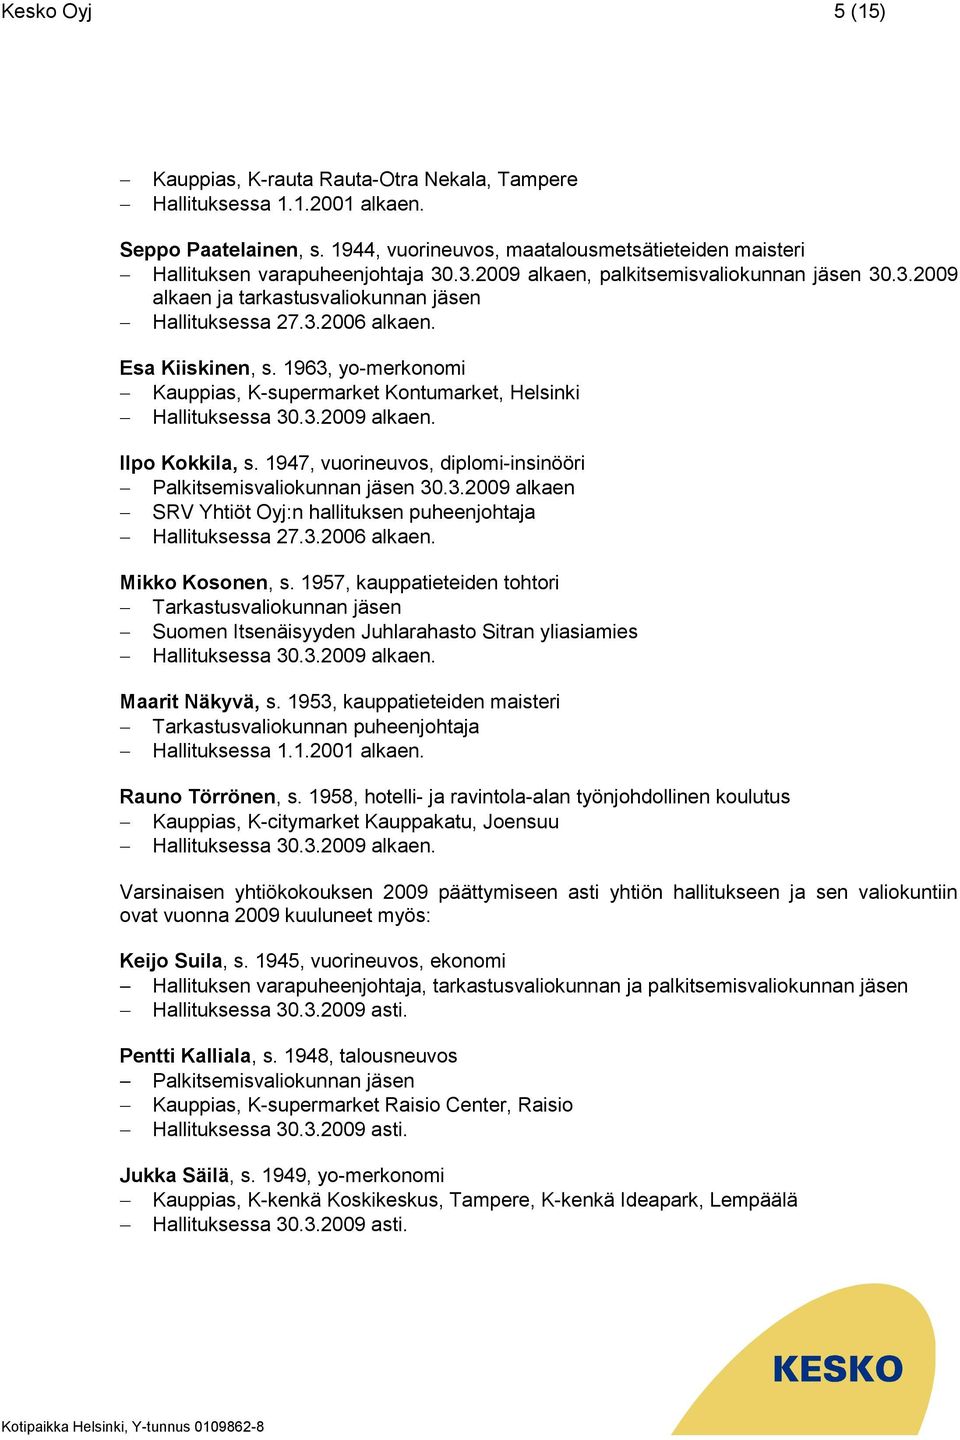 1963, yo-merkonomi Kauppias, K-supermarket Kontumarket, Helsinki Hallituksessa 30.3.2009 alkaen. Ilpo Kokkila, s. 1947, vuorineuvos, diplomi-insinööri Palkitsemisvaliokunnan jäsen 30.3.2009 alkaen SRV Yhtiöt Oyj:n hallituksen puheenjohtaja Hallituksessa 27.